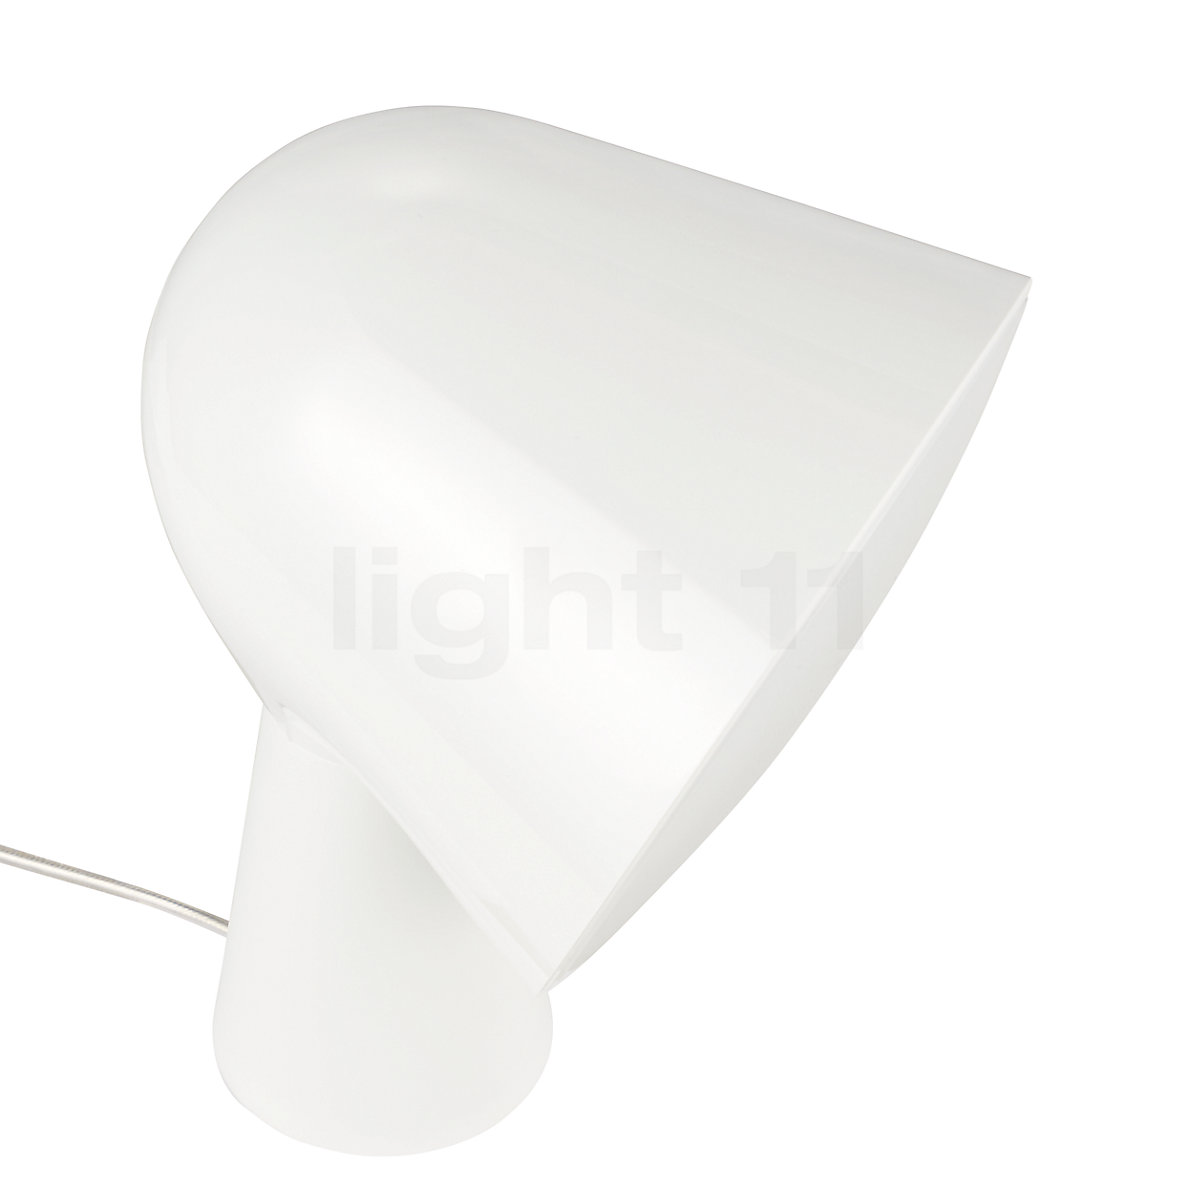 Foscarini Foscarini Binic Lamp Brand New With All Original Packaging. 